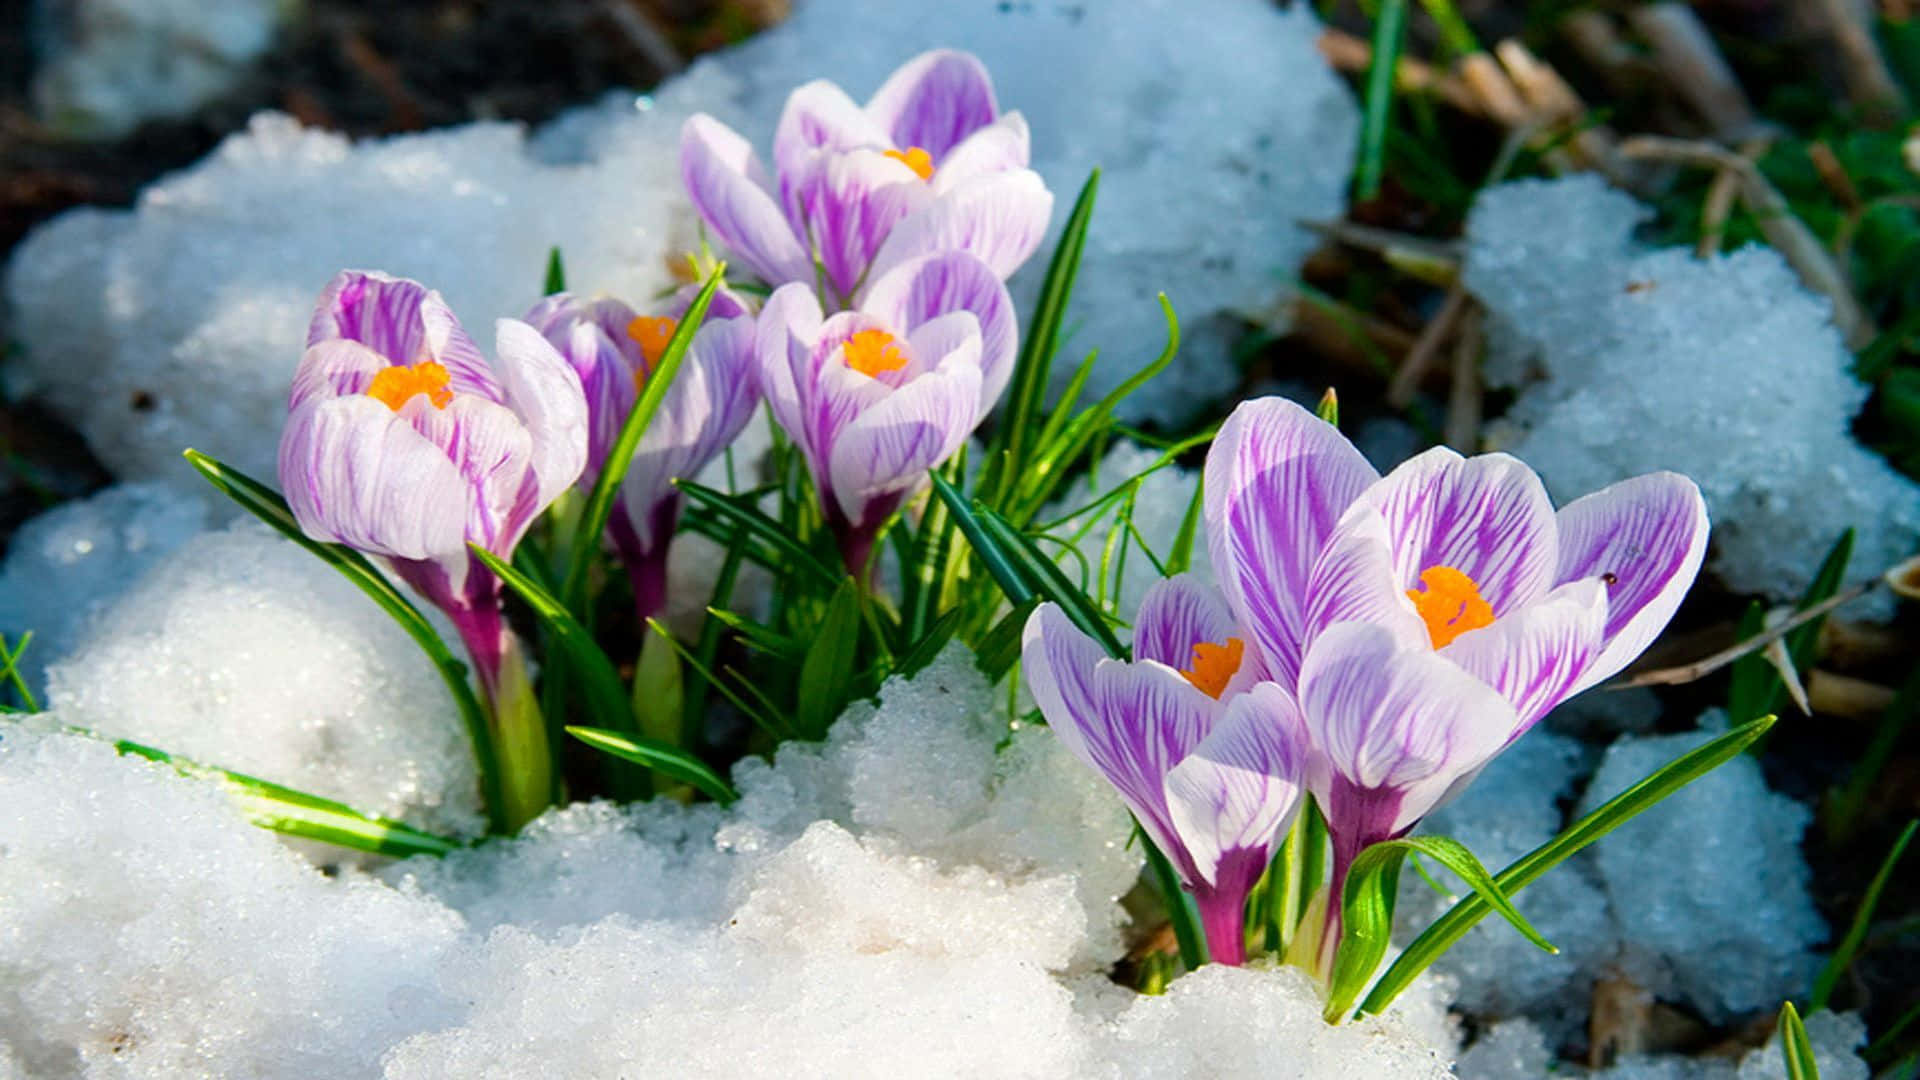 Purple Crocus In Snow Spring Flower Background